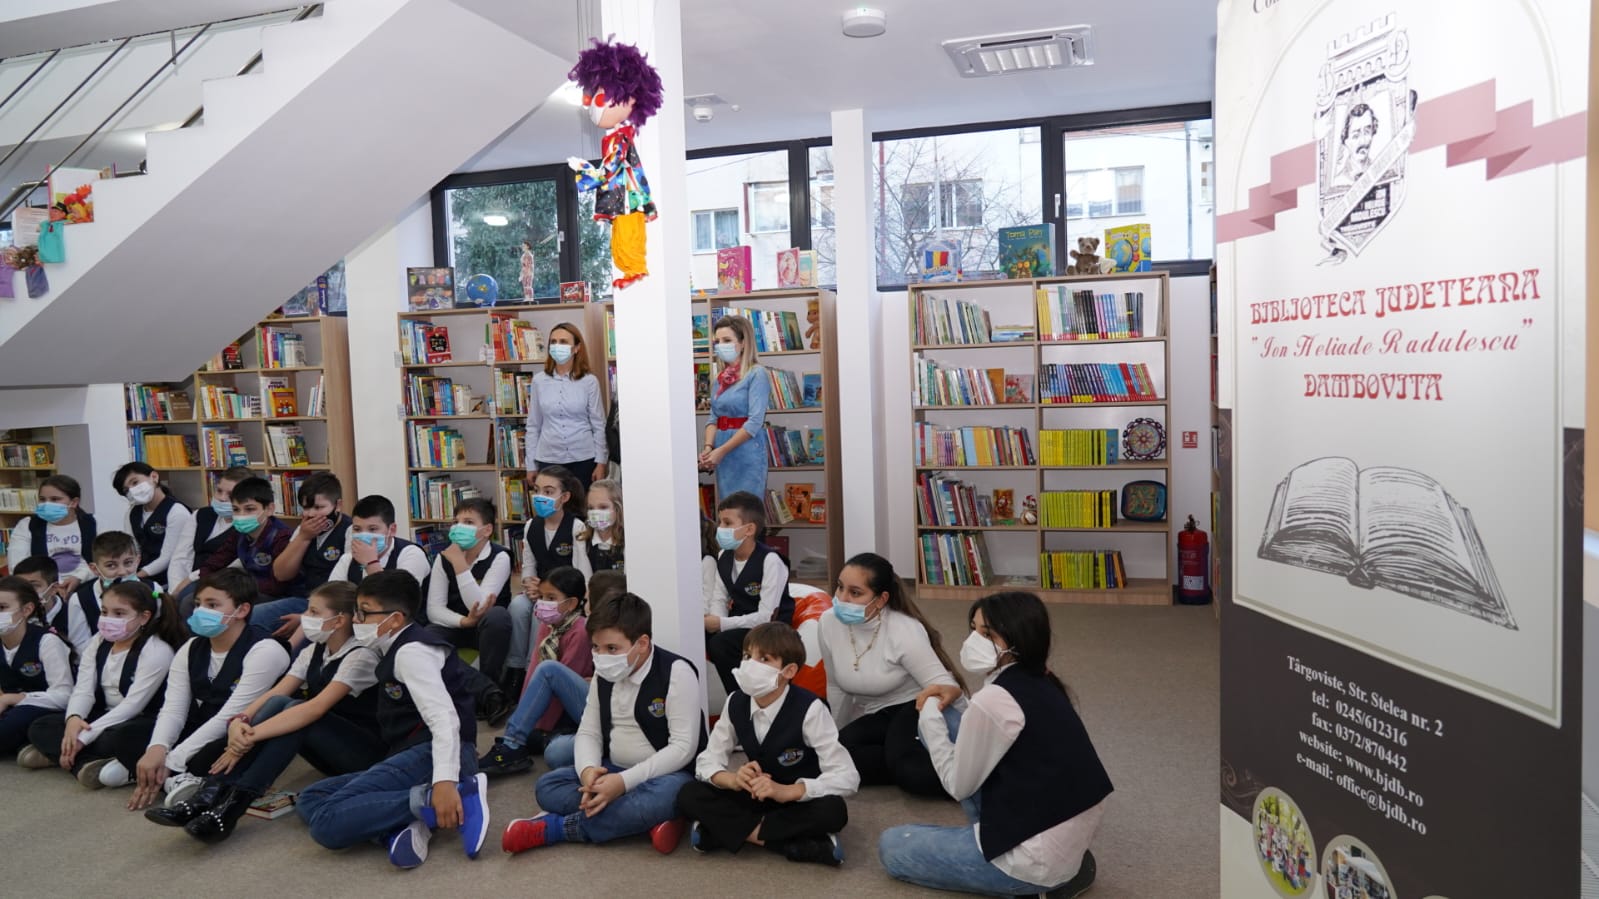 https://cjd.ro/storage/comunicate-de-presa/16-02-2022/5023/a-fost-inaugurat-sediul-filialei-pentru-copii-a-bibliotecii-judetene-14.JPG